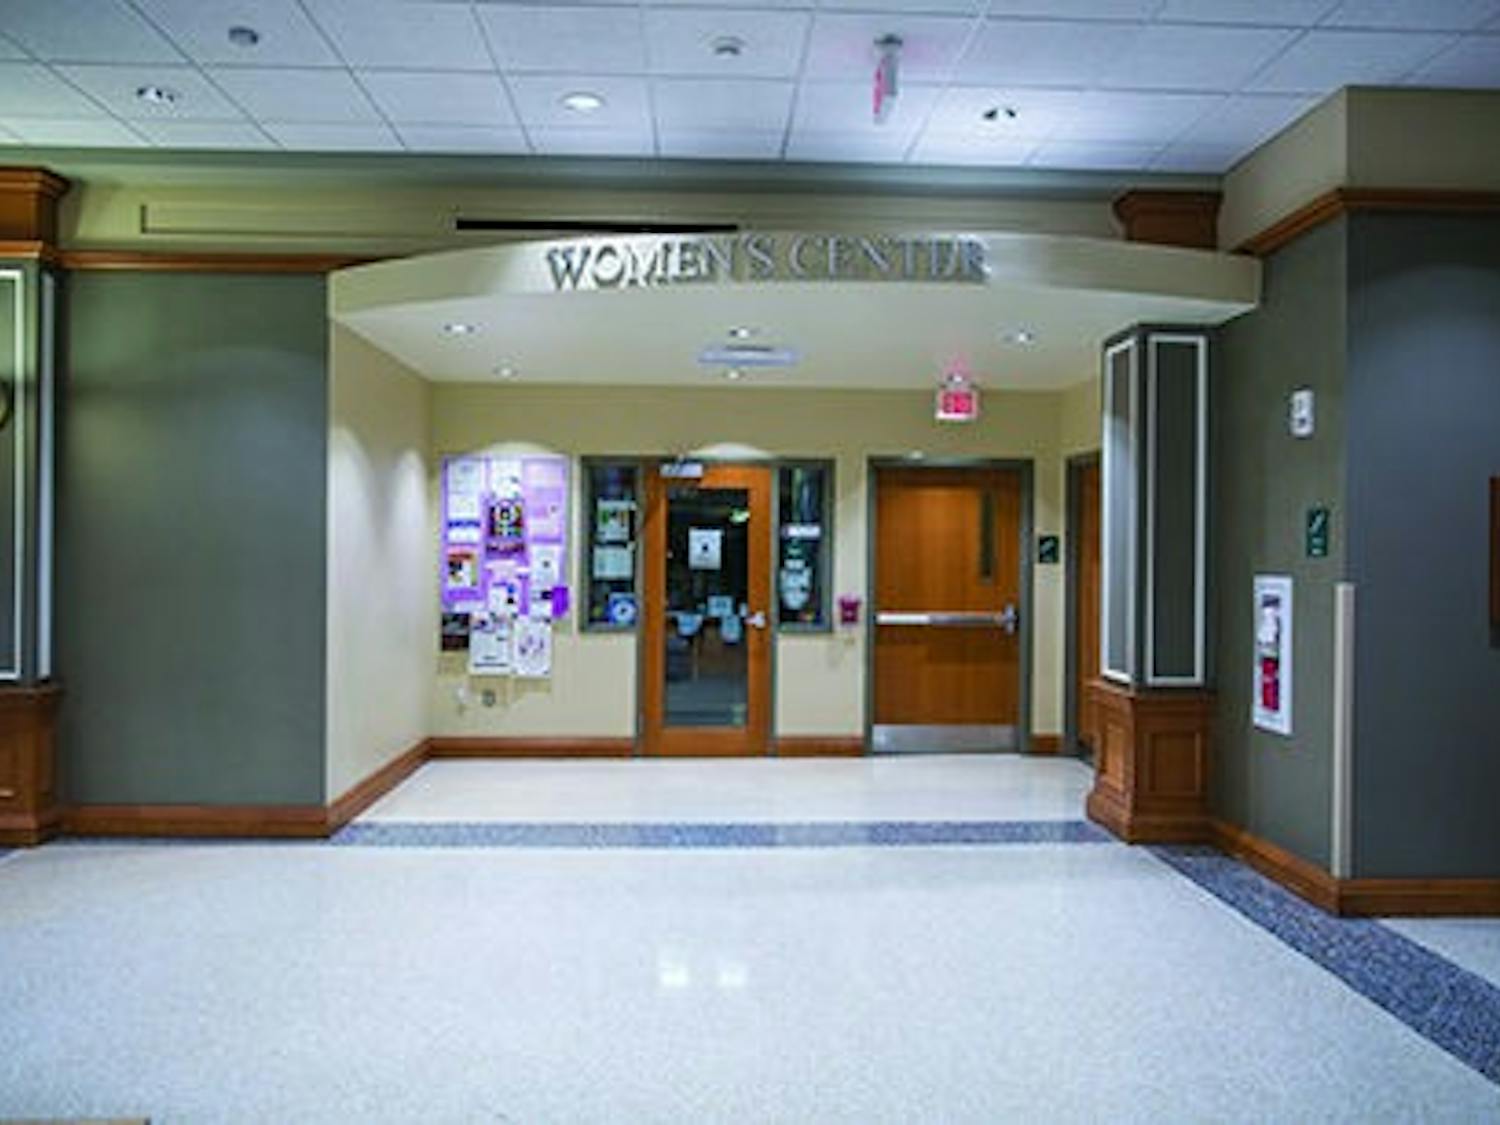 Women's Center in Baker  